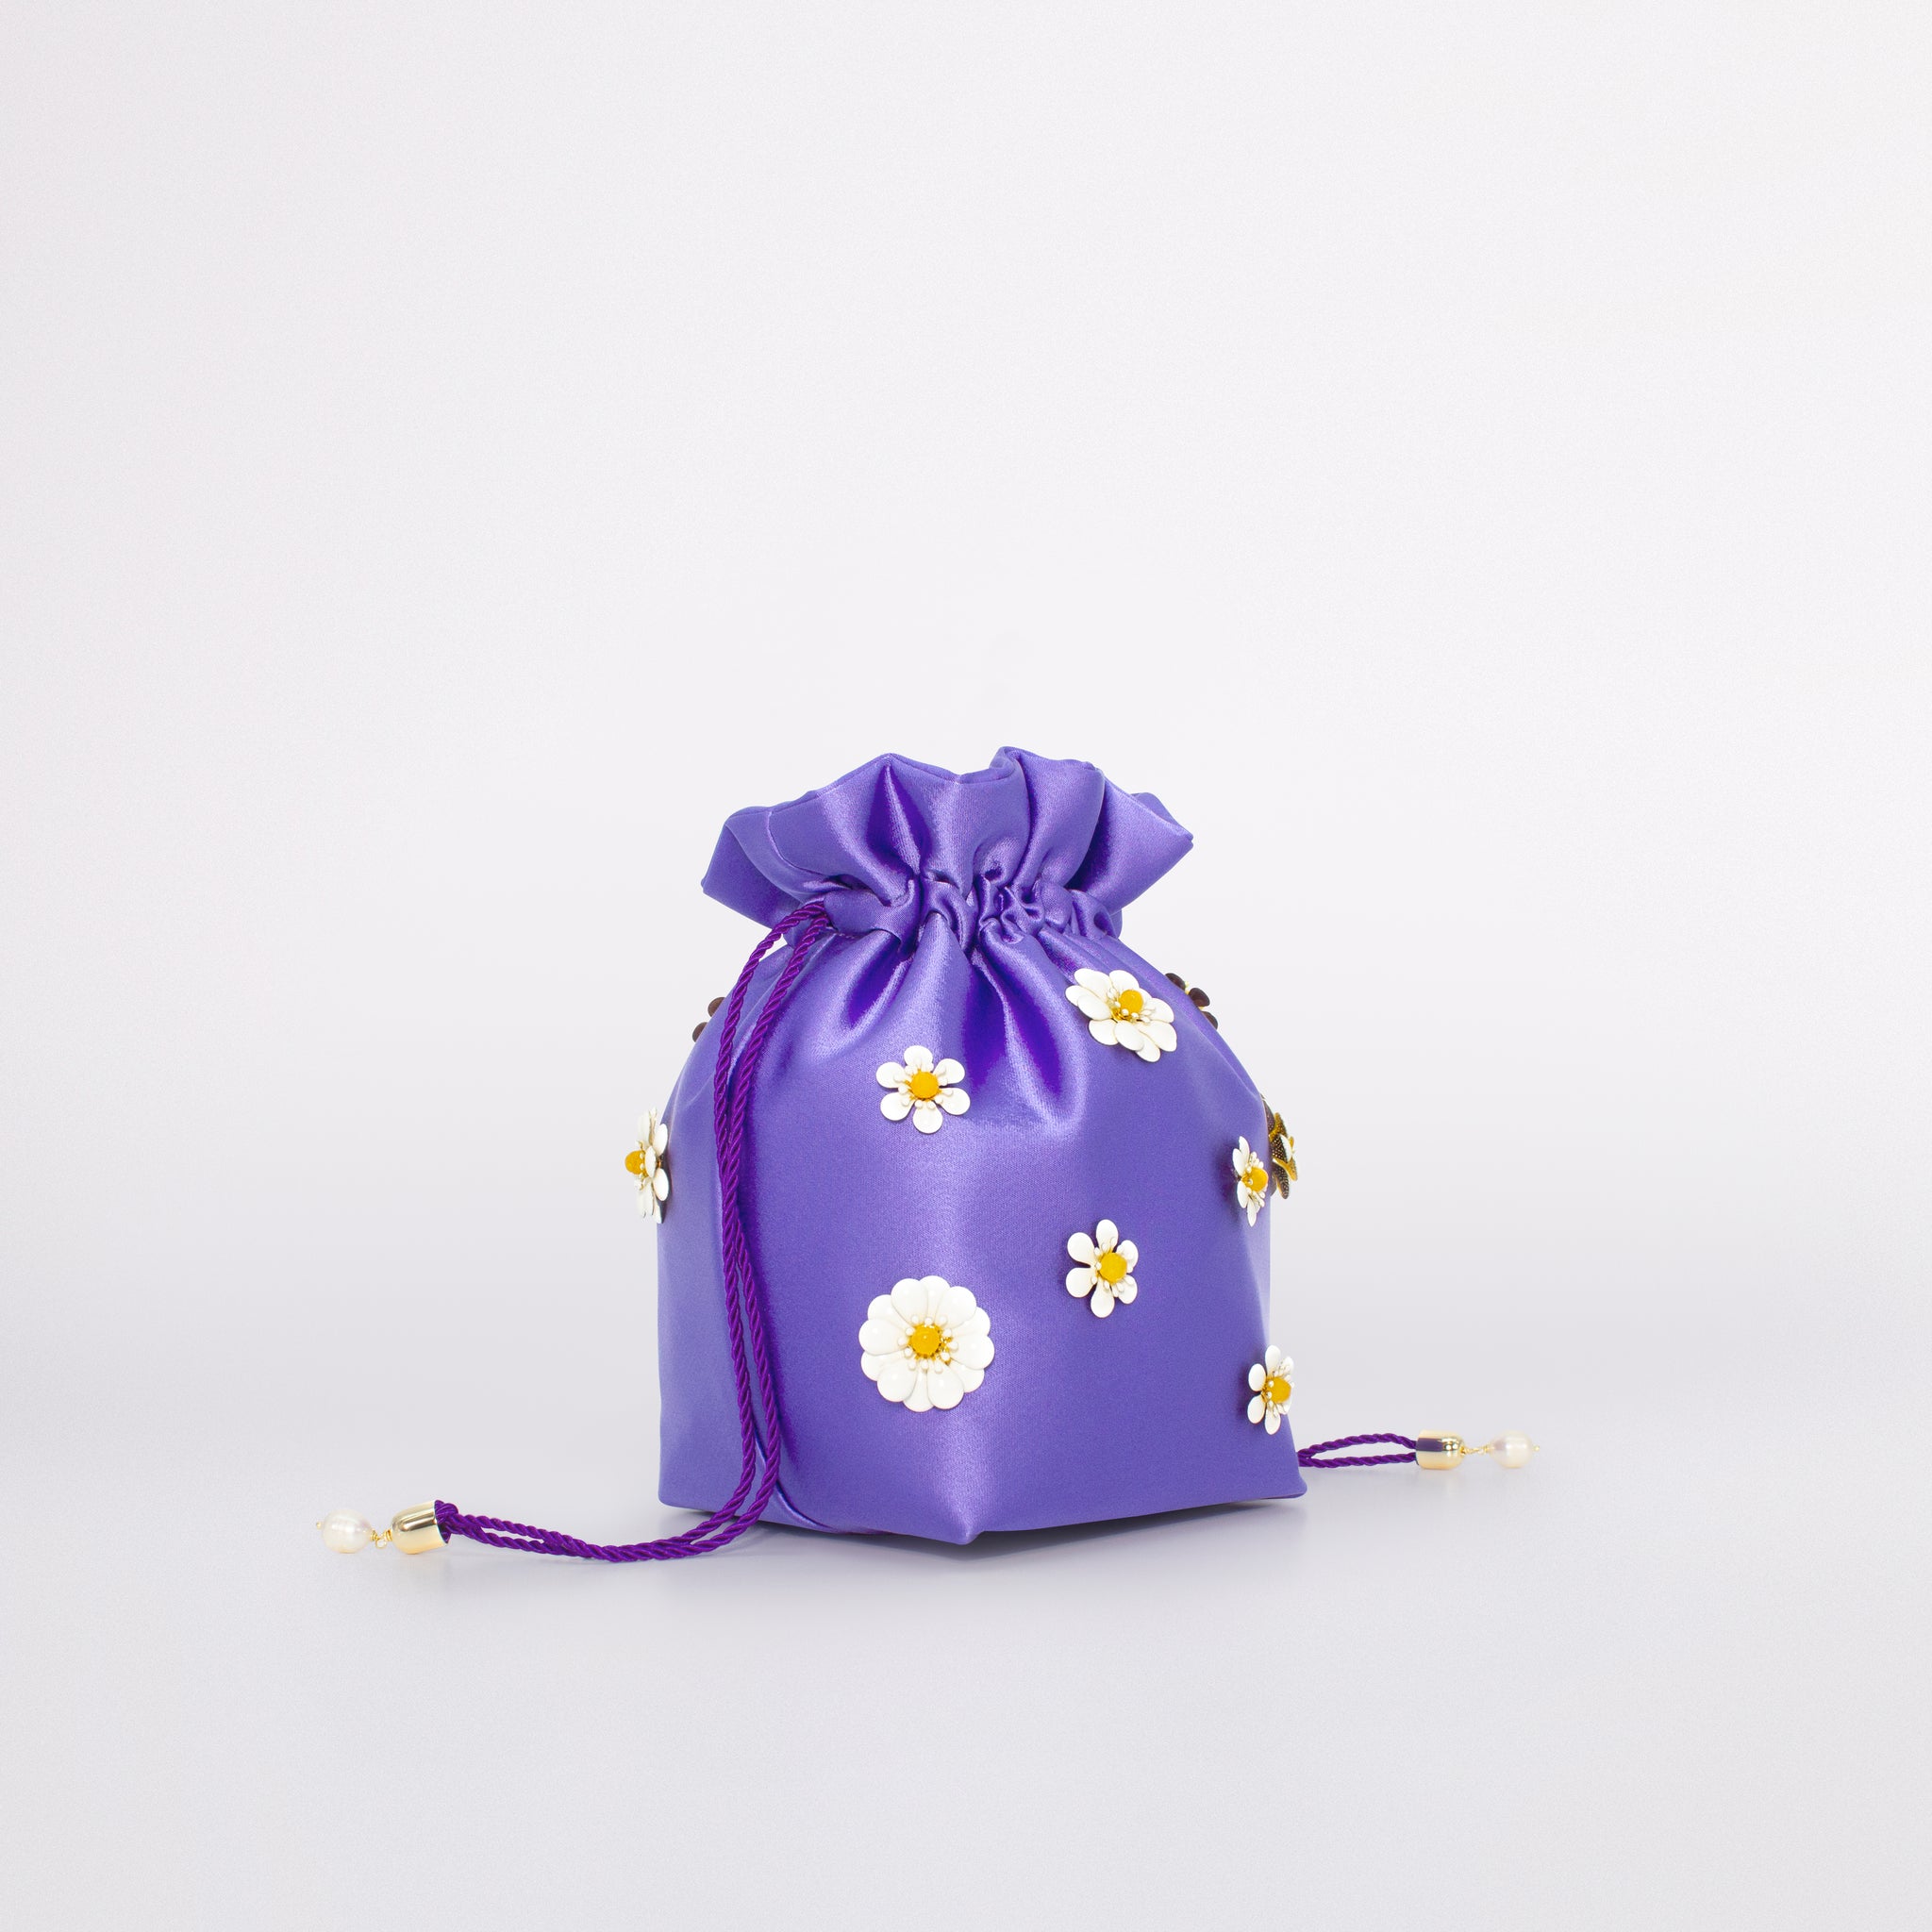 Daisy bag bucket carolina in colorazione viola